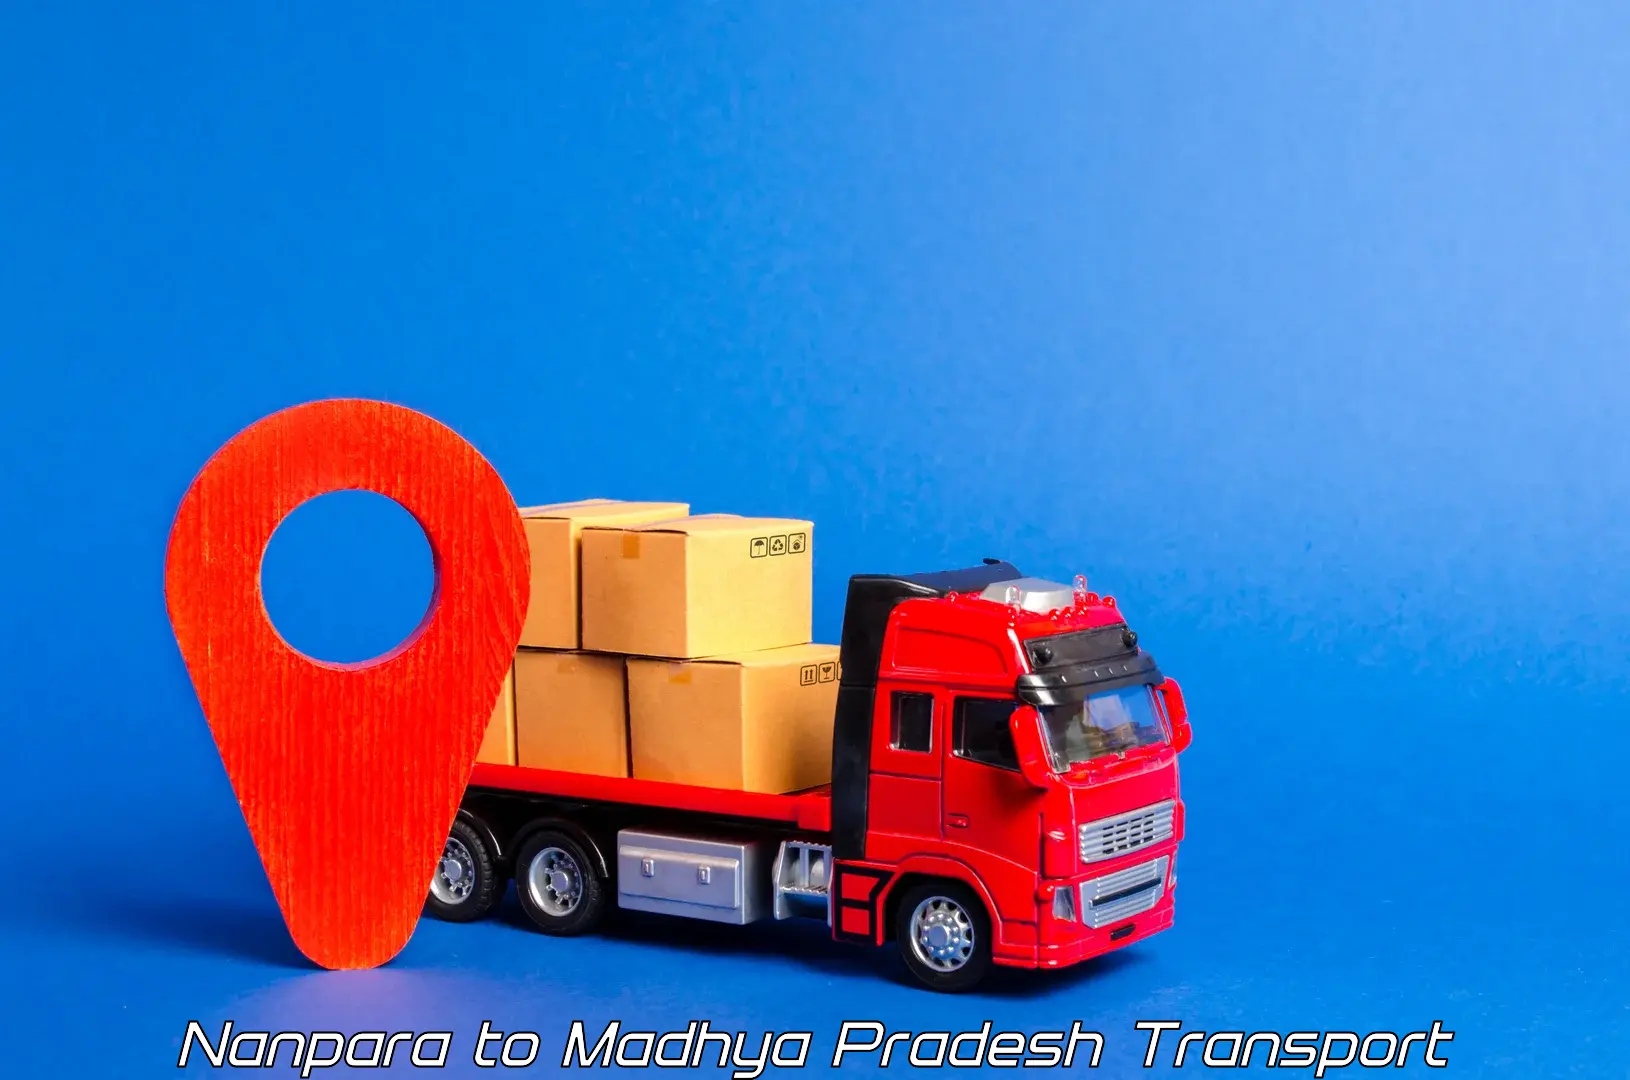 Transportation services Nanpara to Nainpur